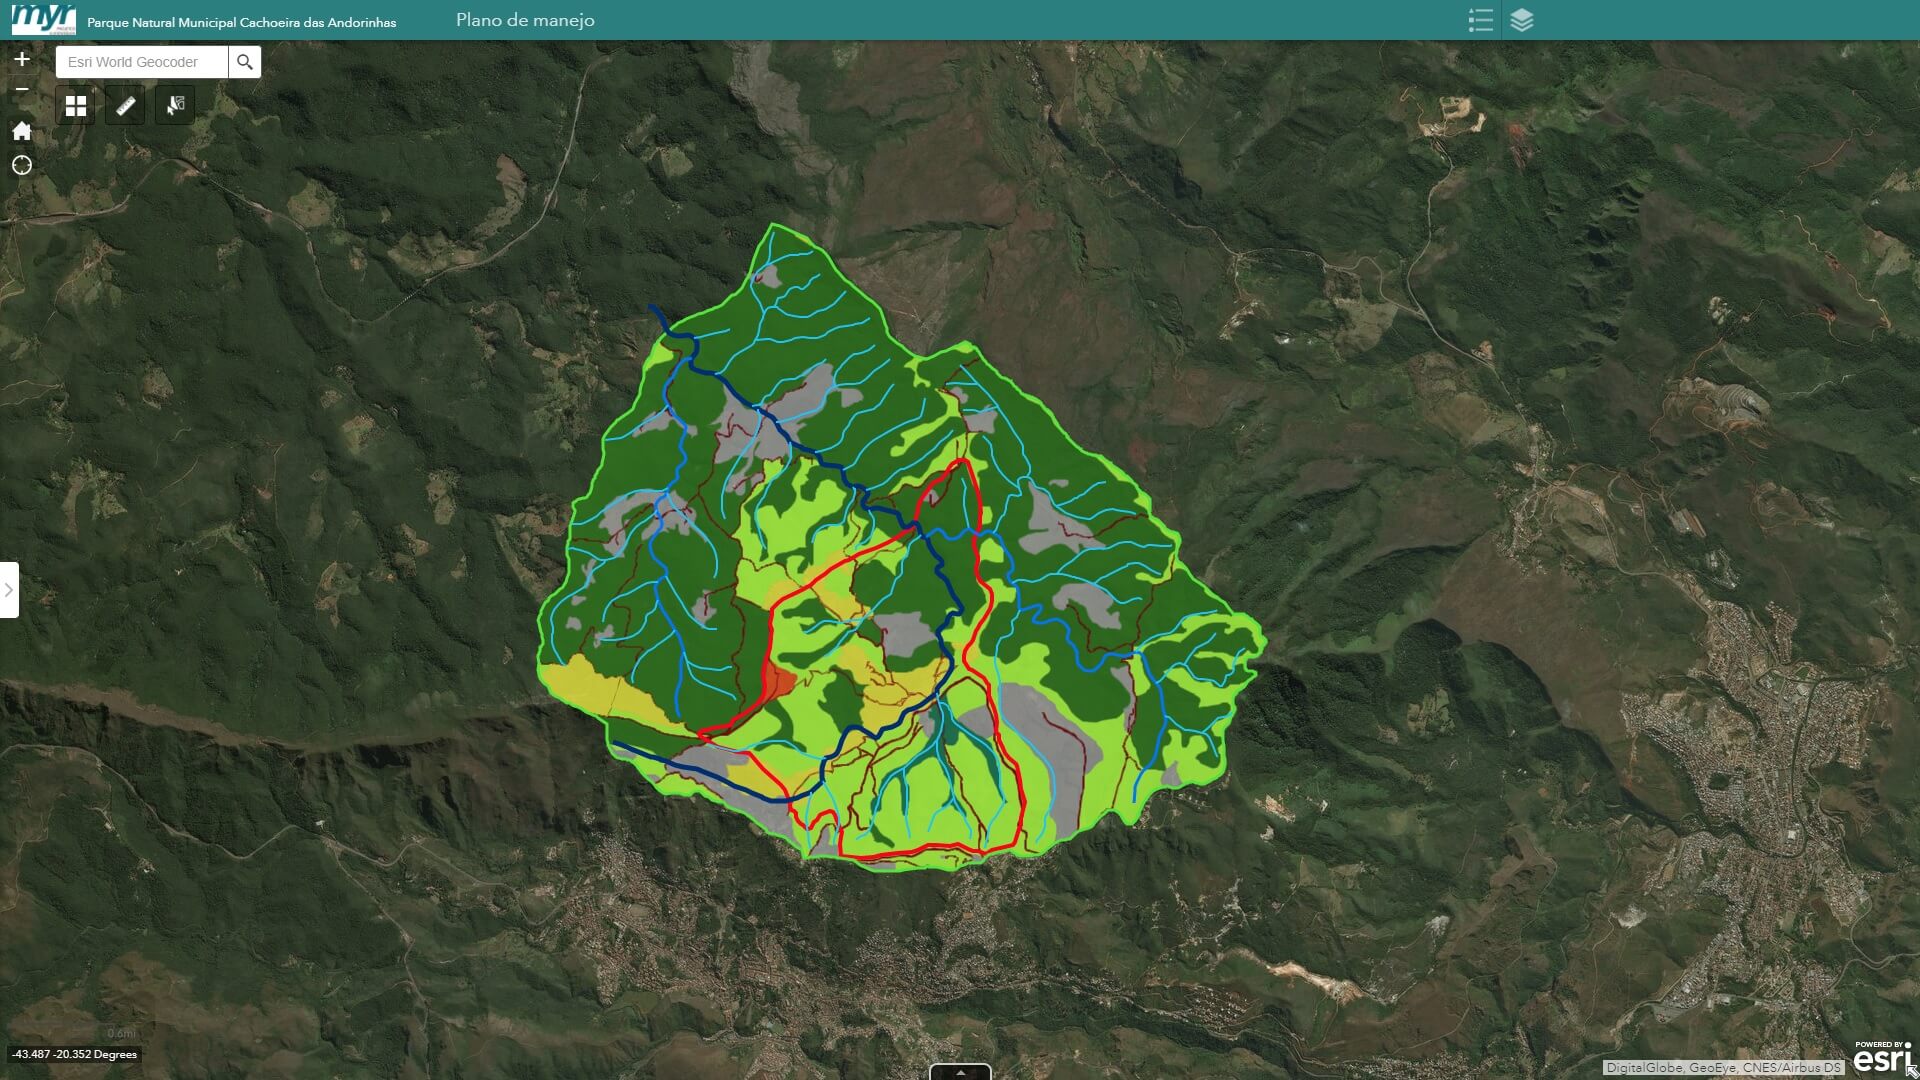 Imagem da tela da plataforma ARCGIS onde os dados do Plano de Manejo estão disponibilizados.